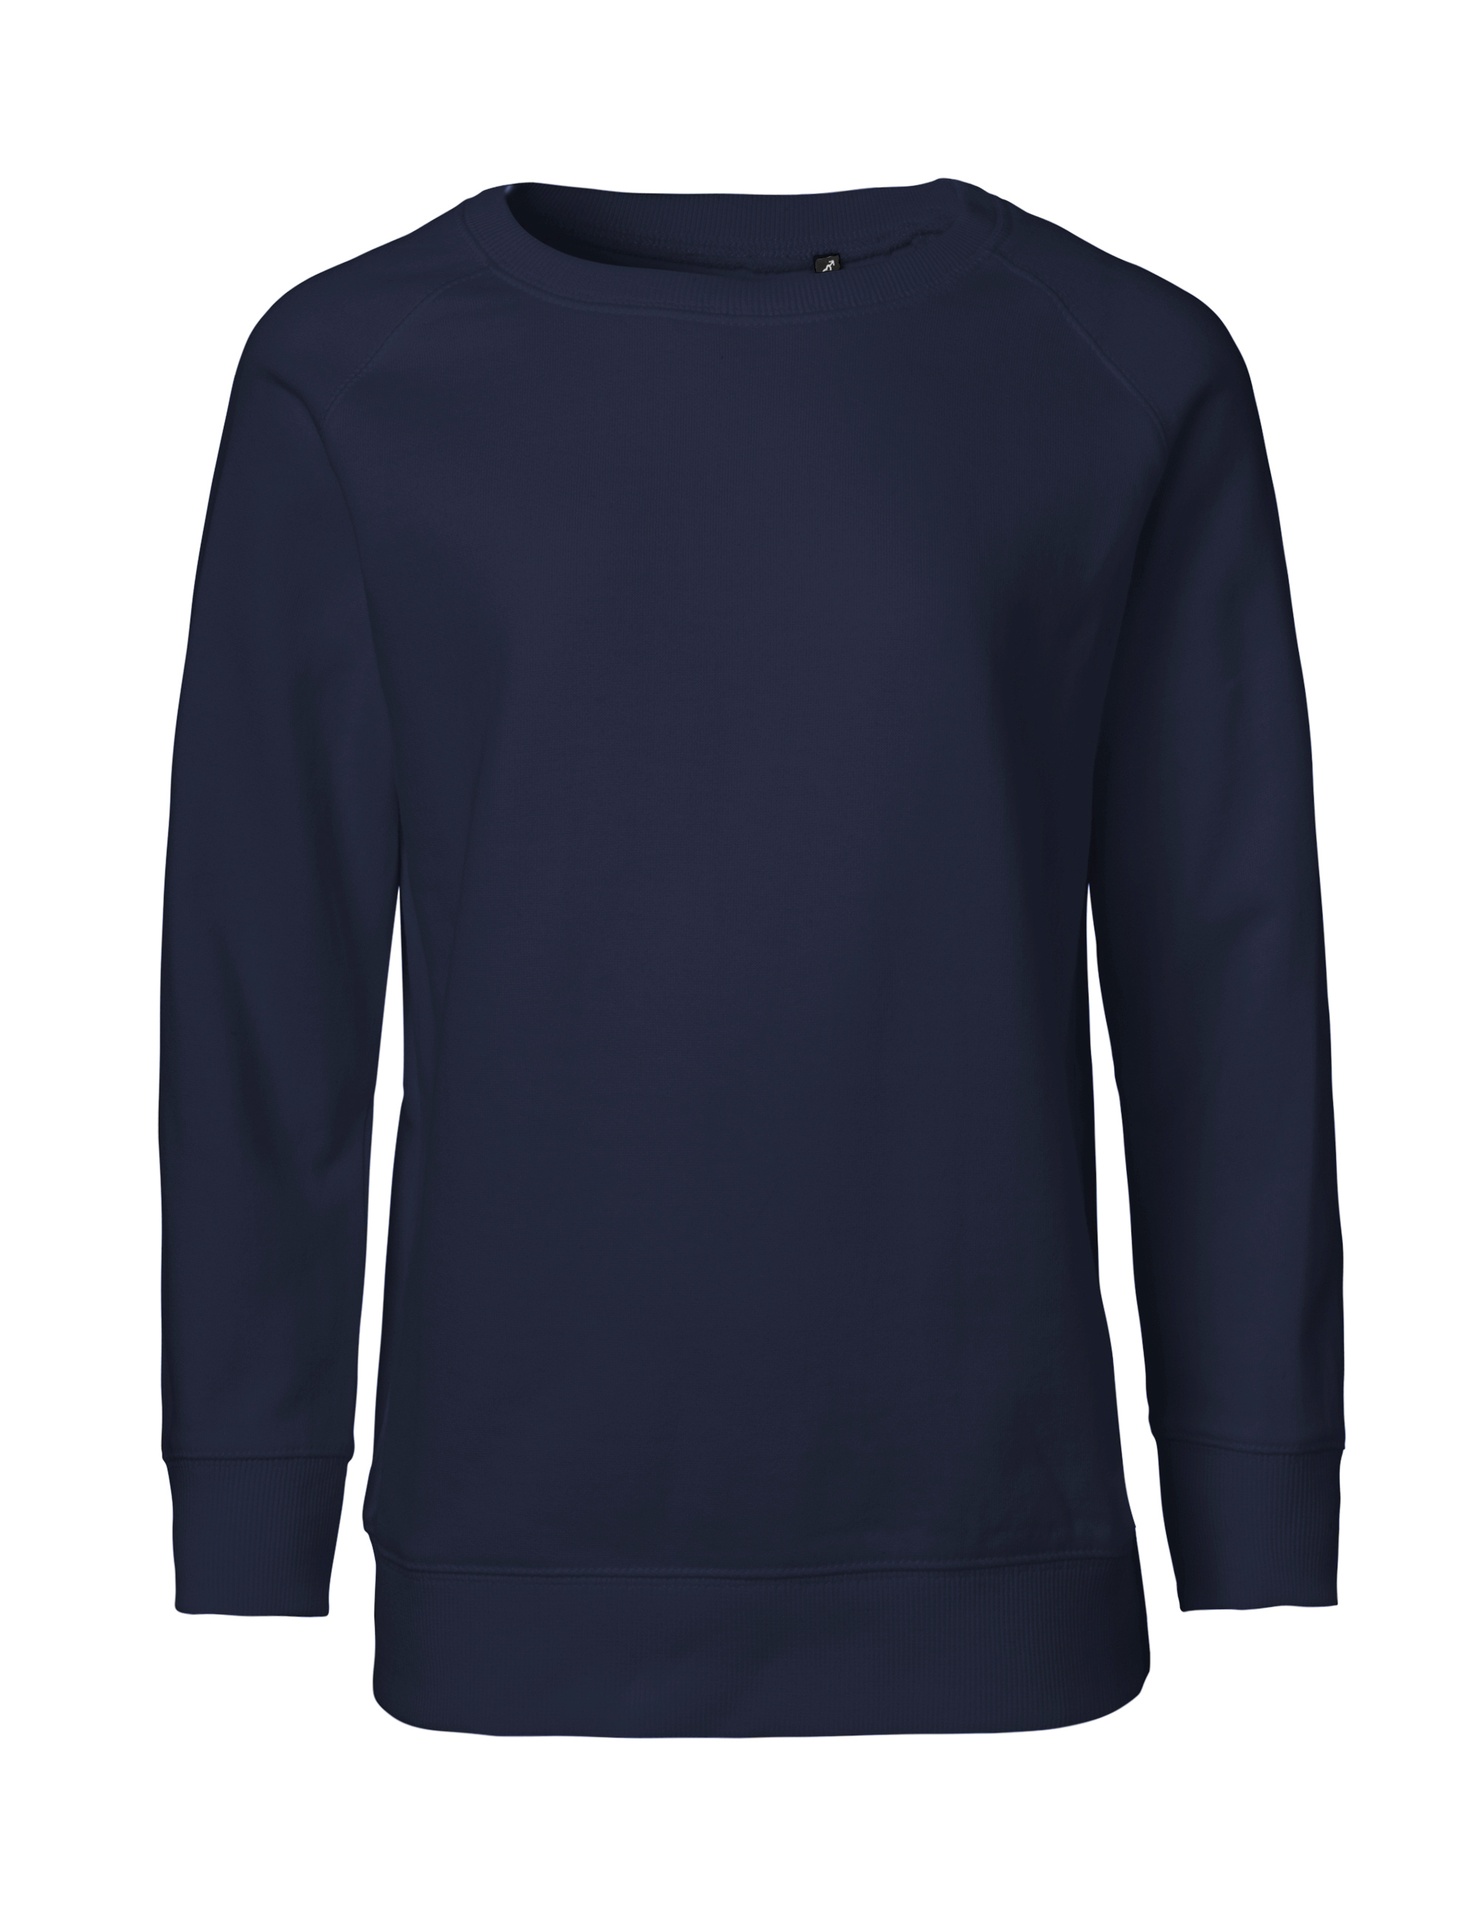 [PR/05528] Kids Sweatshirt (Navy 04, 92/98 cm)